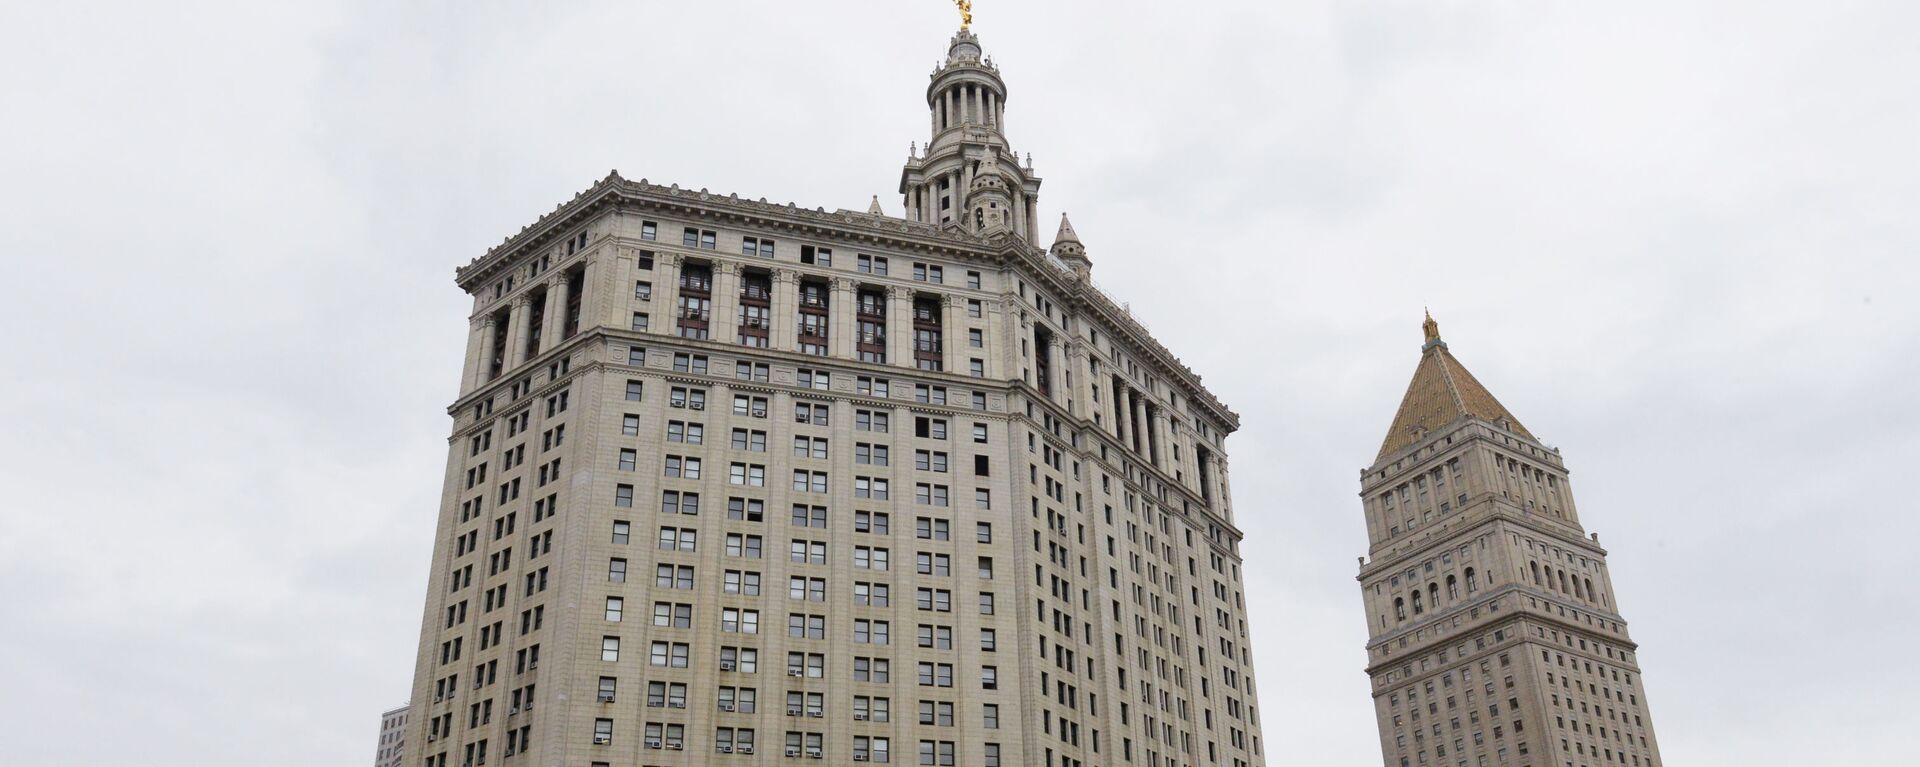 Муниципальное здание Манхэттена и здание суда США (справа) на Сентр-стрит в Нью-Йорке. - Sputnik Արմենիա, 1920, 28.04.2021